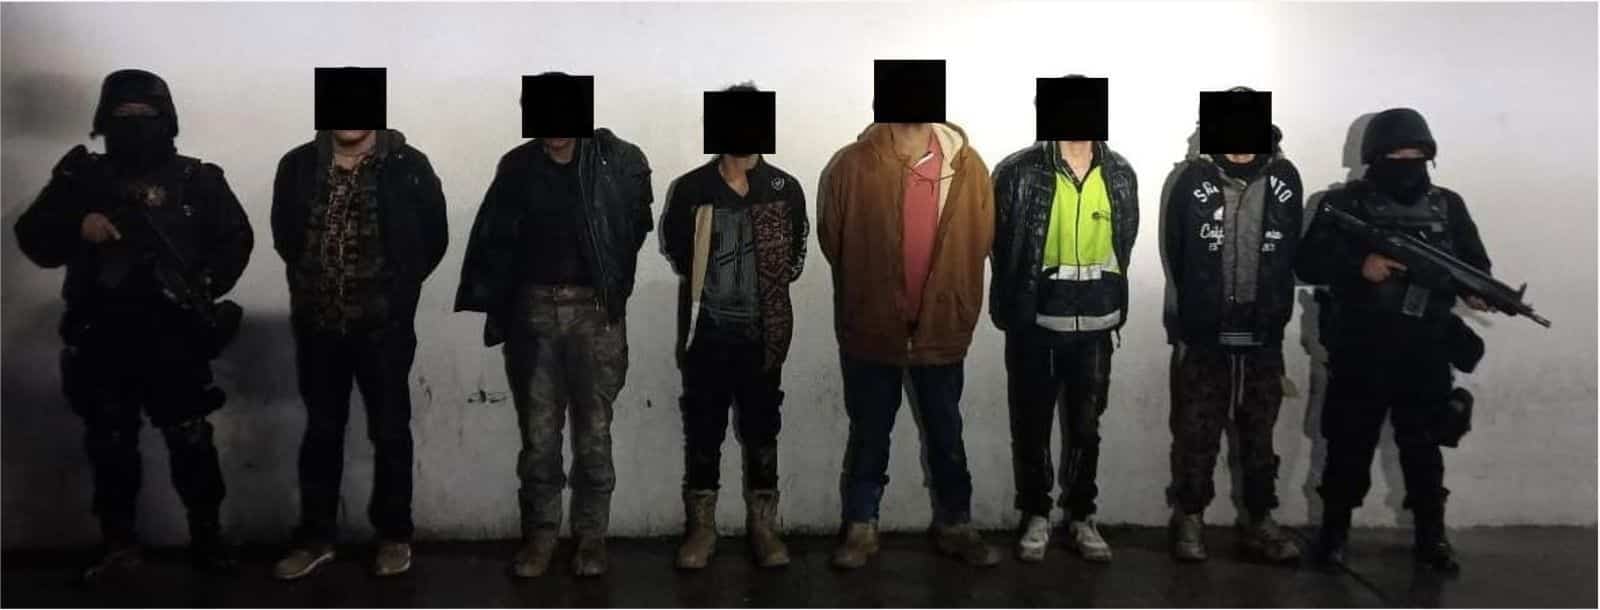 Elementos de Fuerza Civil lograron capturar a seis presuntos delincuentes quienes portaban armas y drogas, al sur del estado.